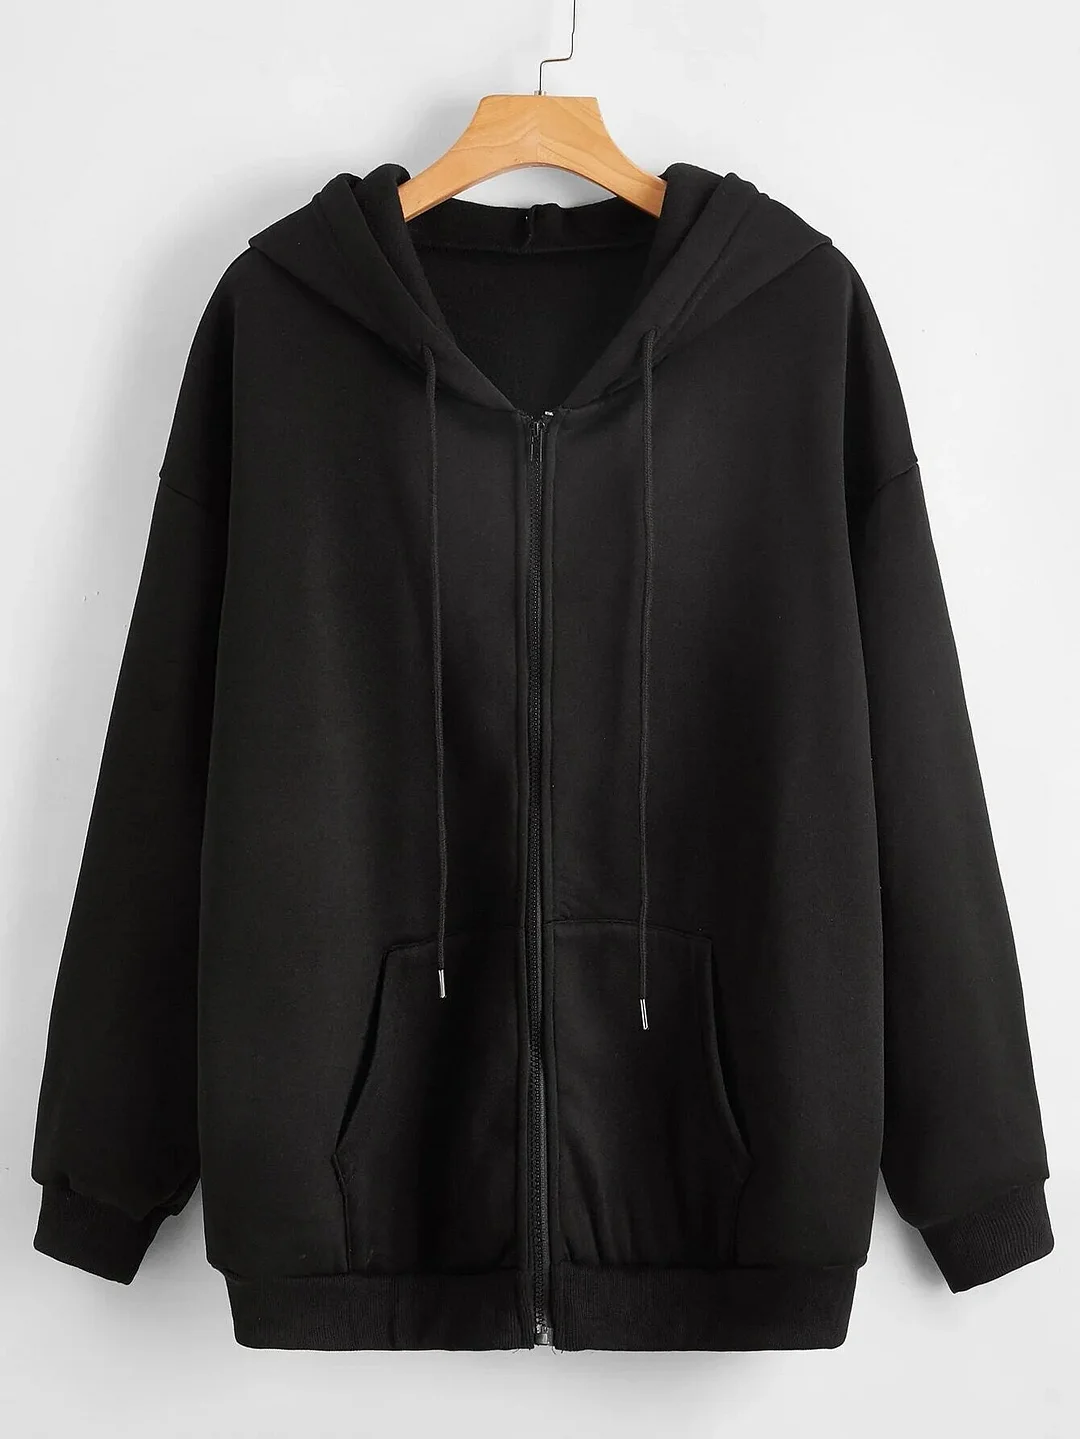 Toloer Clothes Hoodies Sweatshirt Solid Drawstring Zip Up Drop Shoulder Hoodie Kawaii Women Oversize Coat Harajuku Streetwear Tops